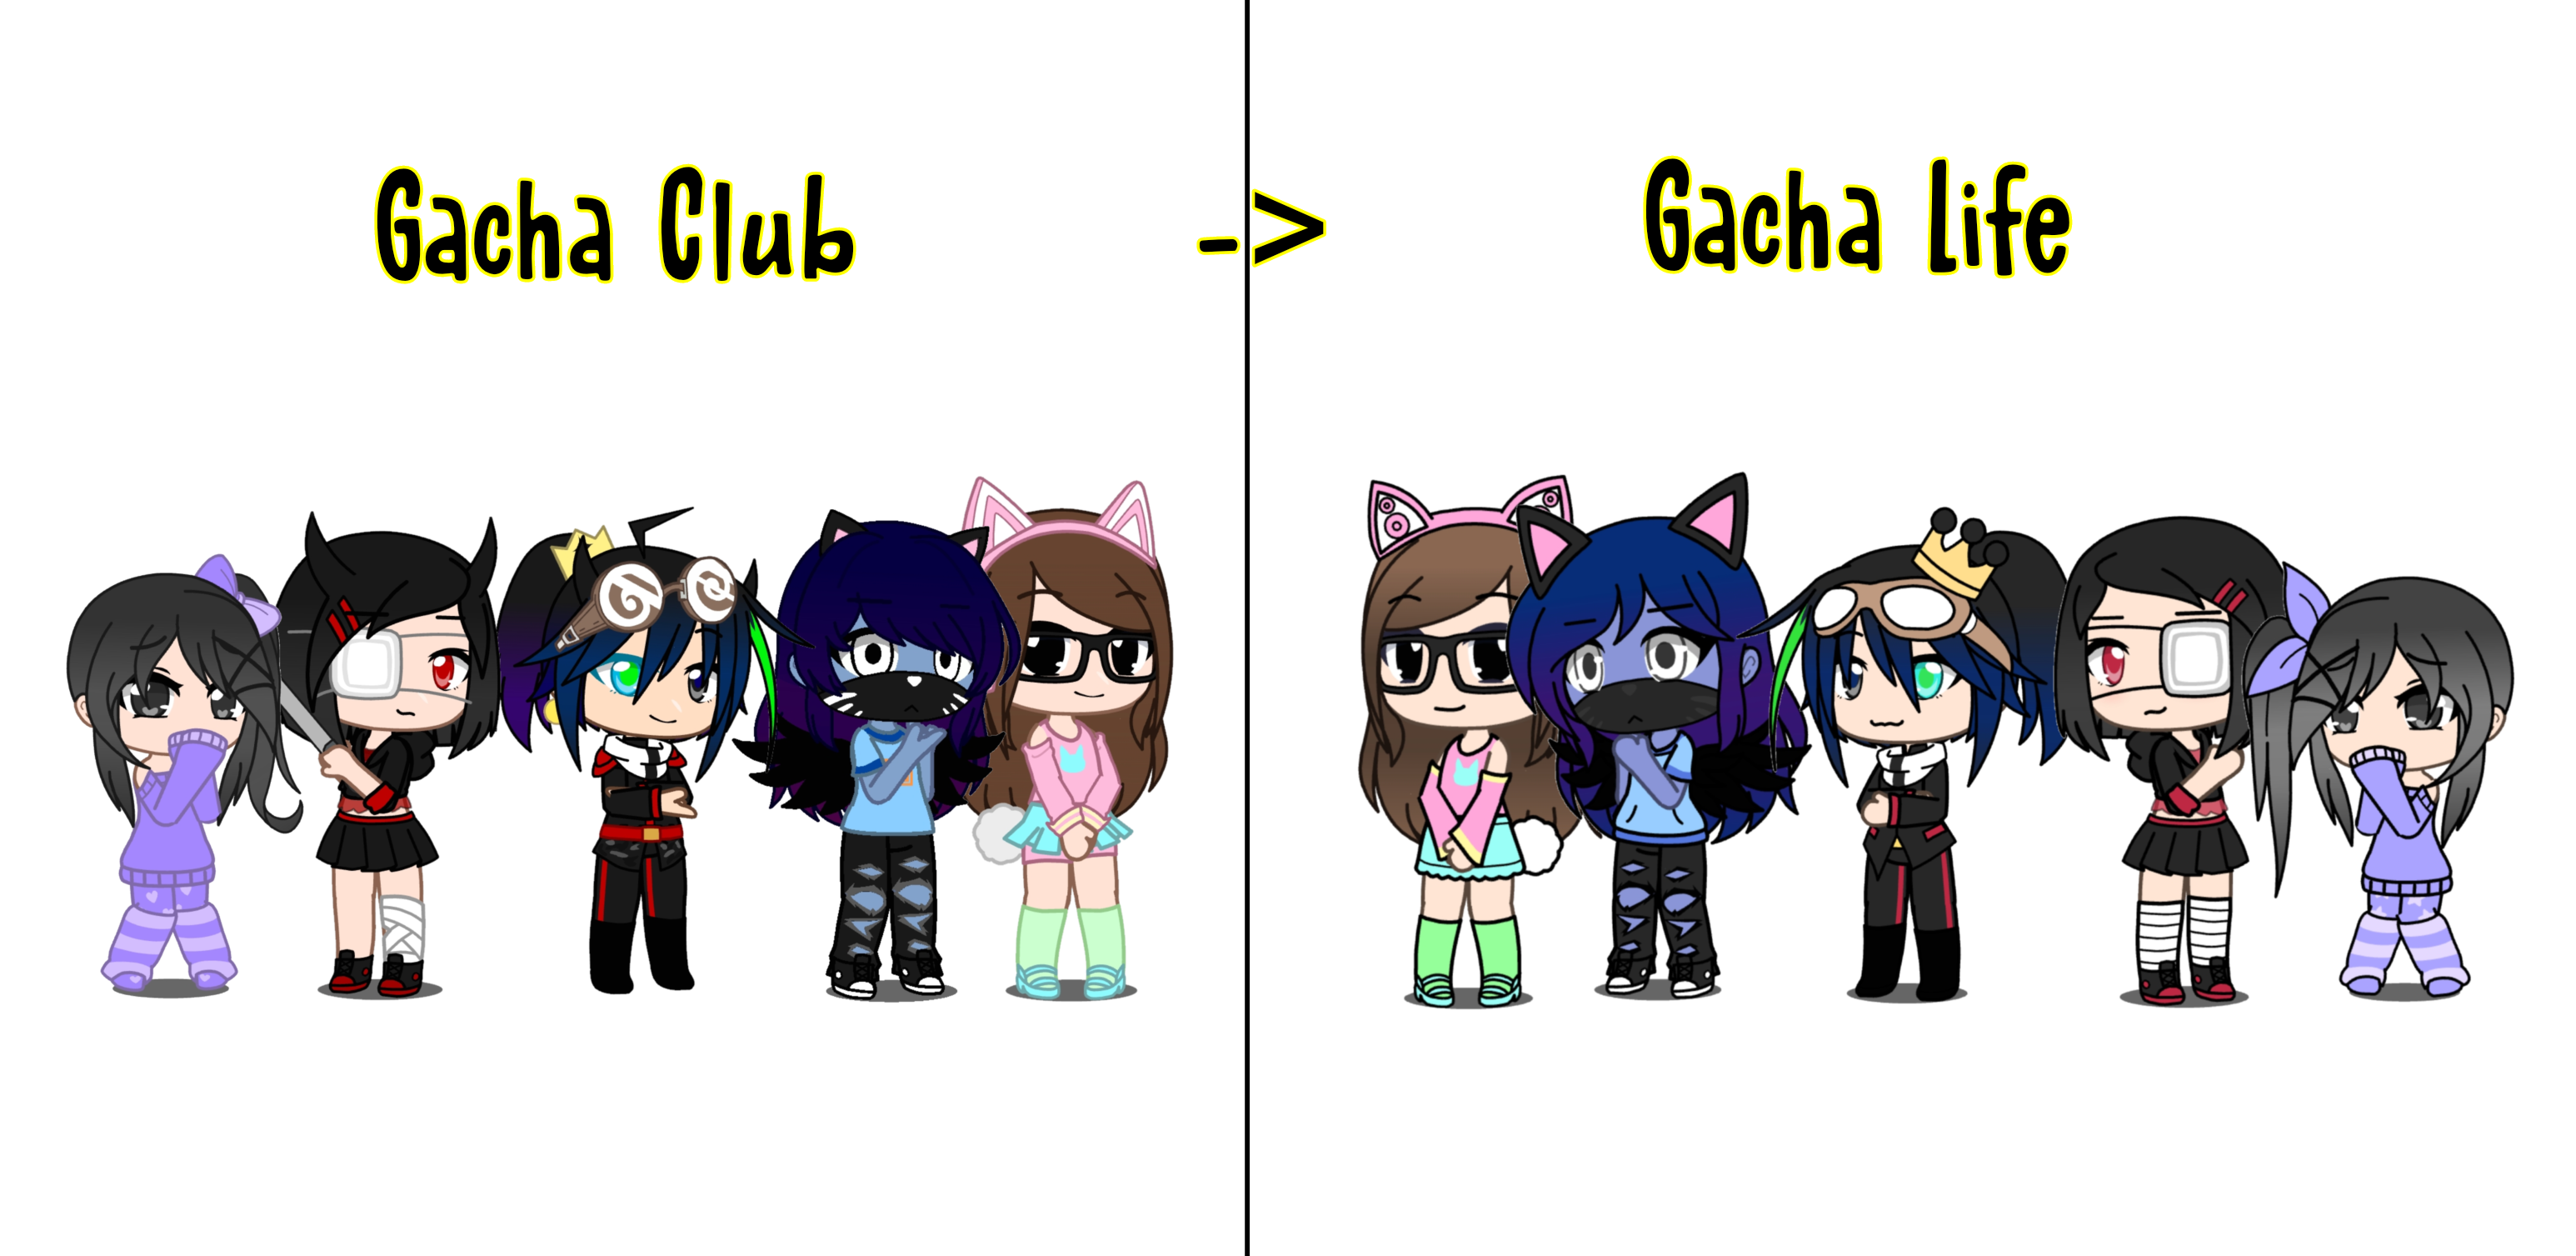 My Gacha club oc meets my Gacha life oc : r/GachaClub